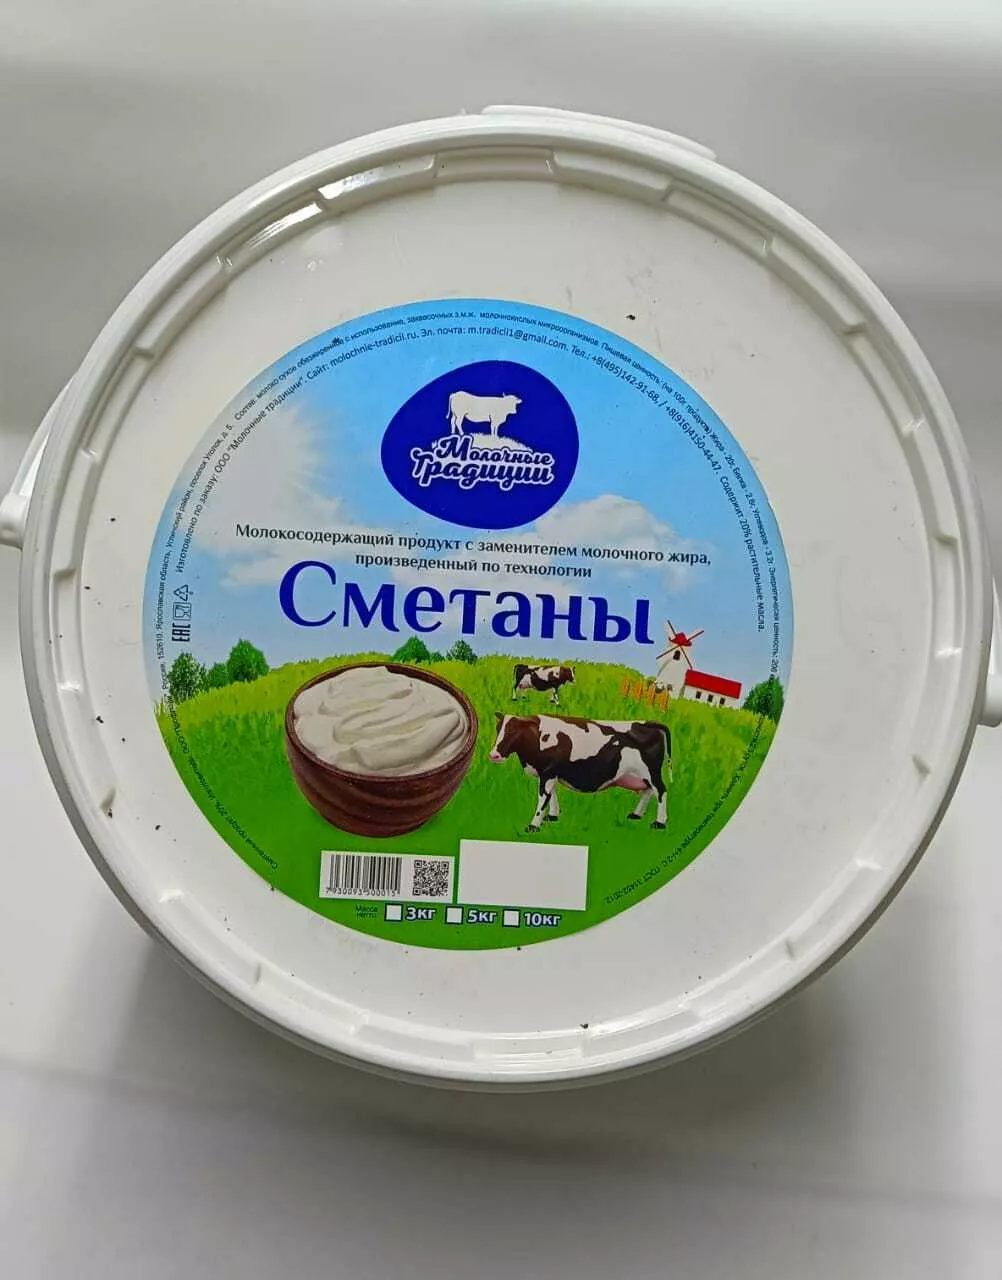 сметанный продукт (молочные традиции) в Москве